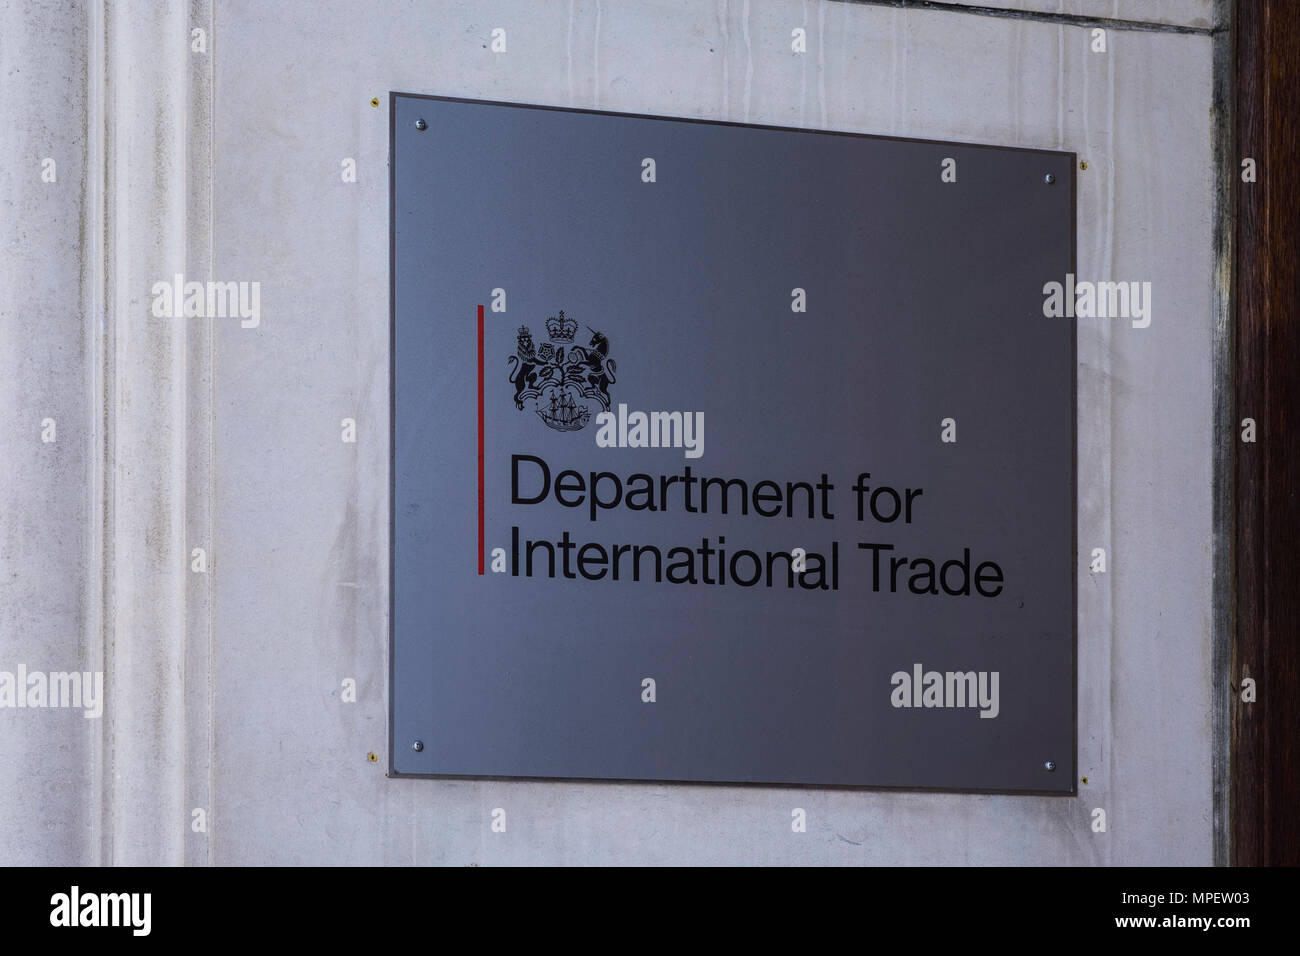 Ministère du Commerce international, enseigne à l'extérieur de l'immeuble sur Whitehall, Londres, Angleterre, Royaume-Uni Banque D'Images